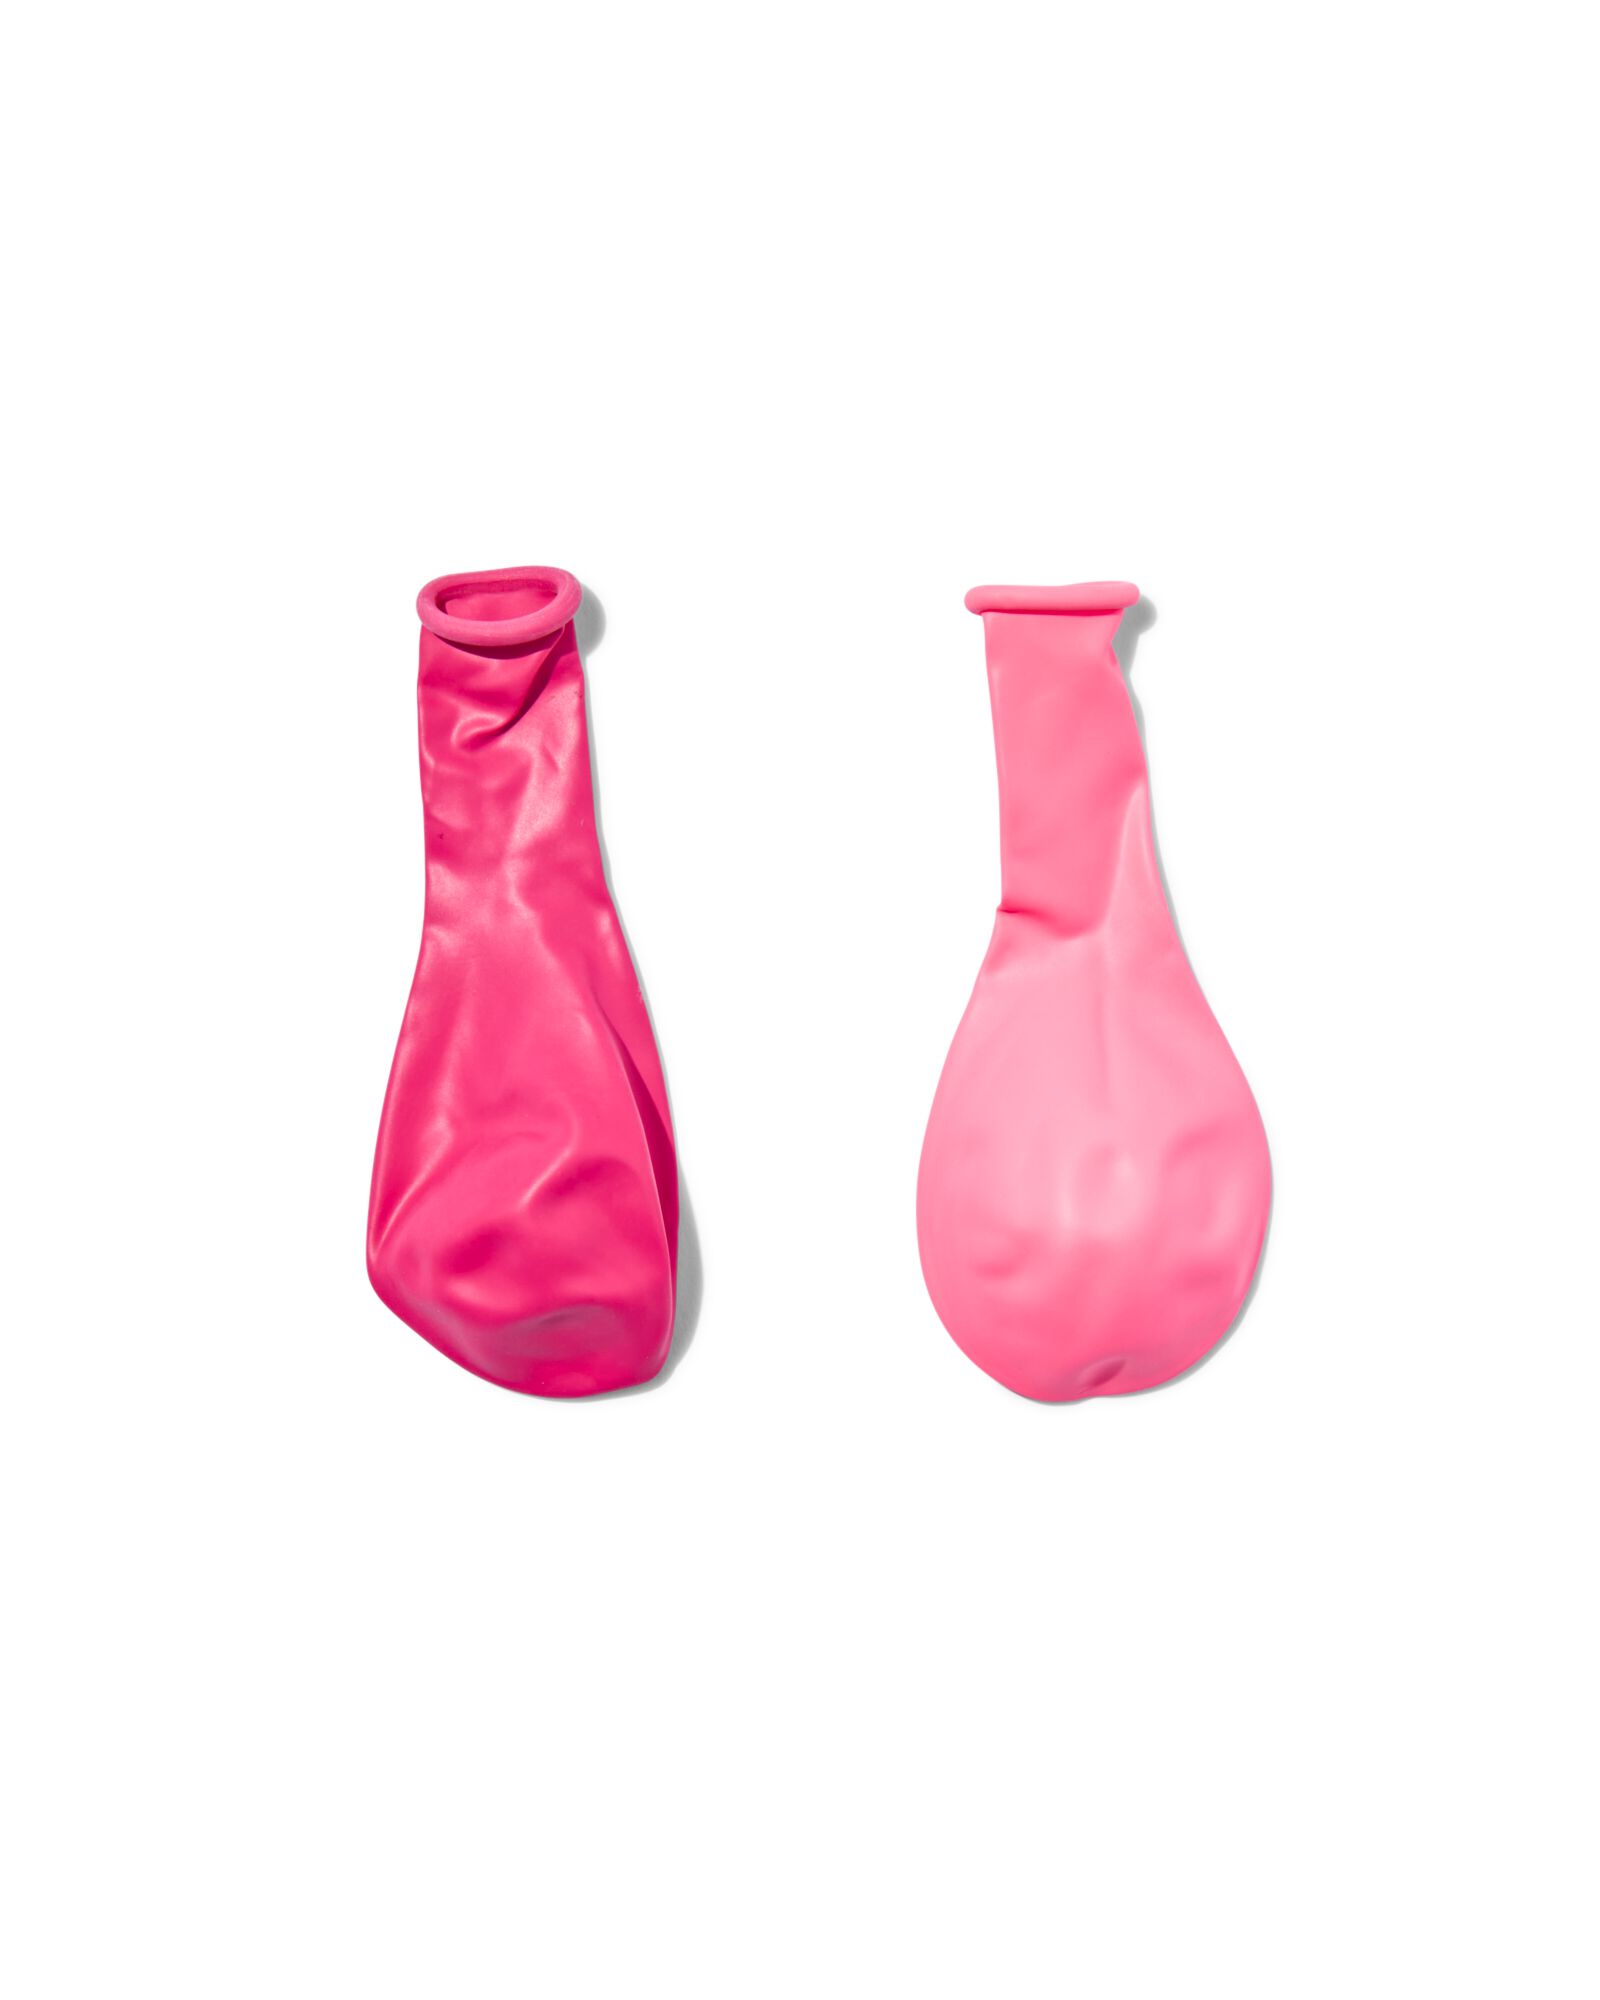 ballonnen 23cm roze/rood - 20 stuks - 14200526 - HEMA